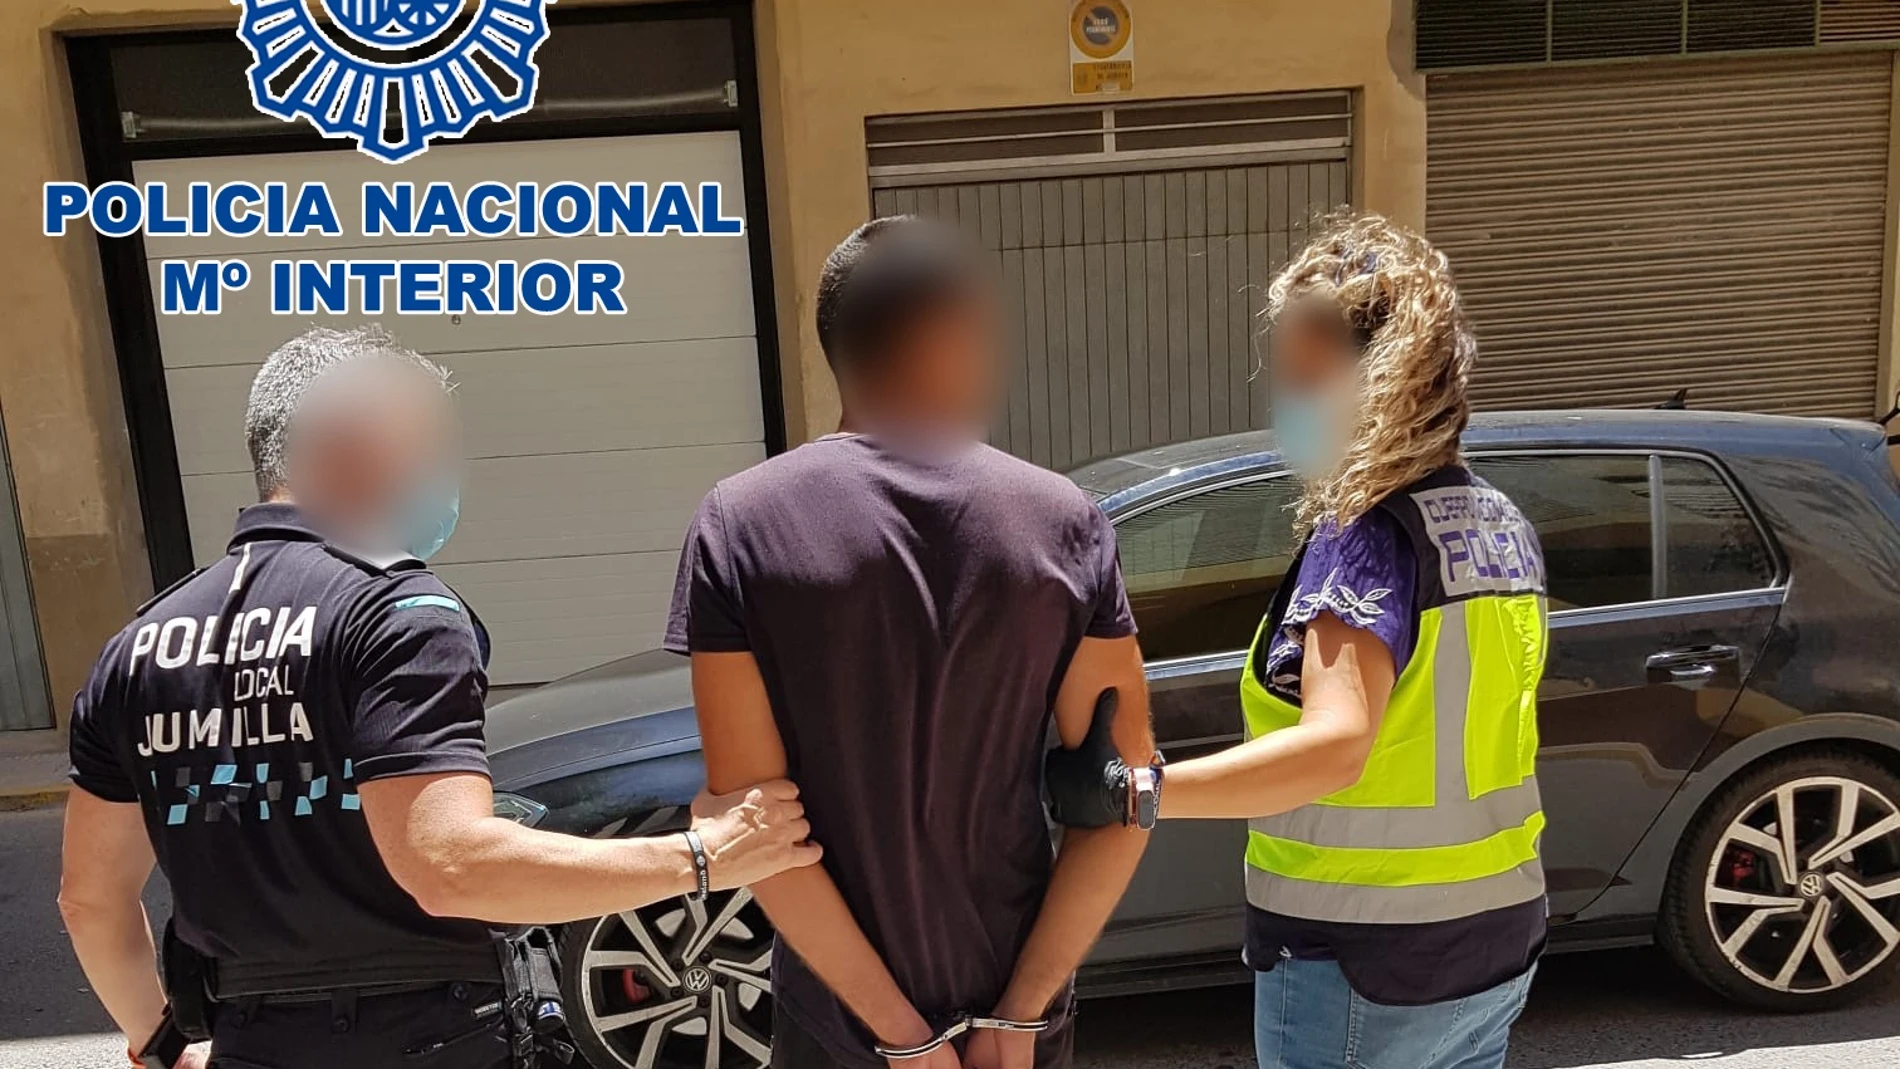 Alicante.-Sucesos.- Detenidos dos hombres acusados de agredir sexualmente a una joven en una playa de Alicante